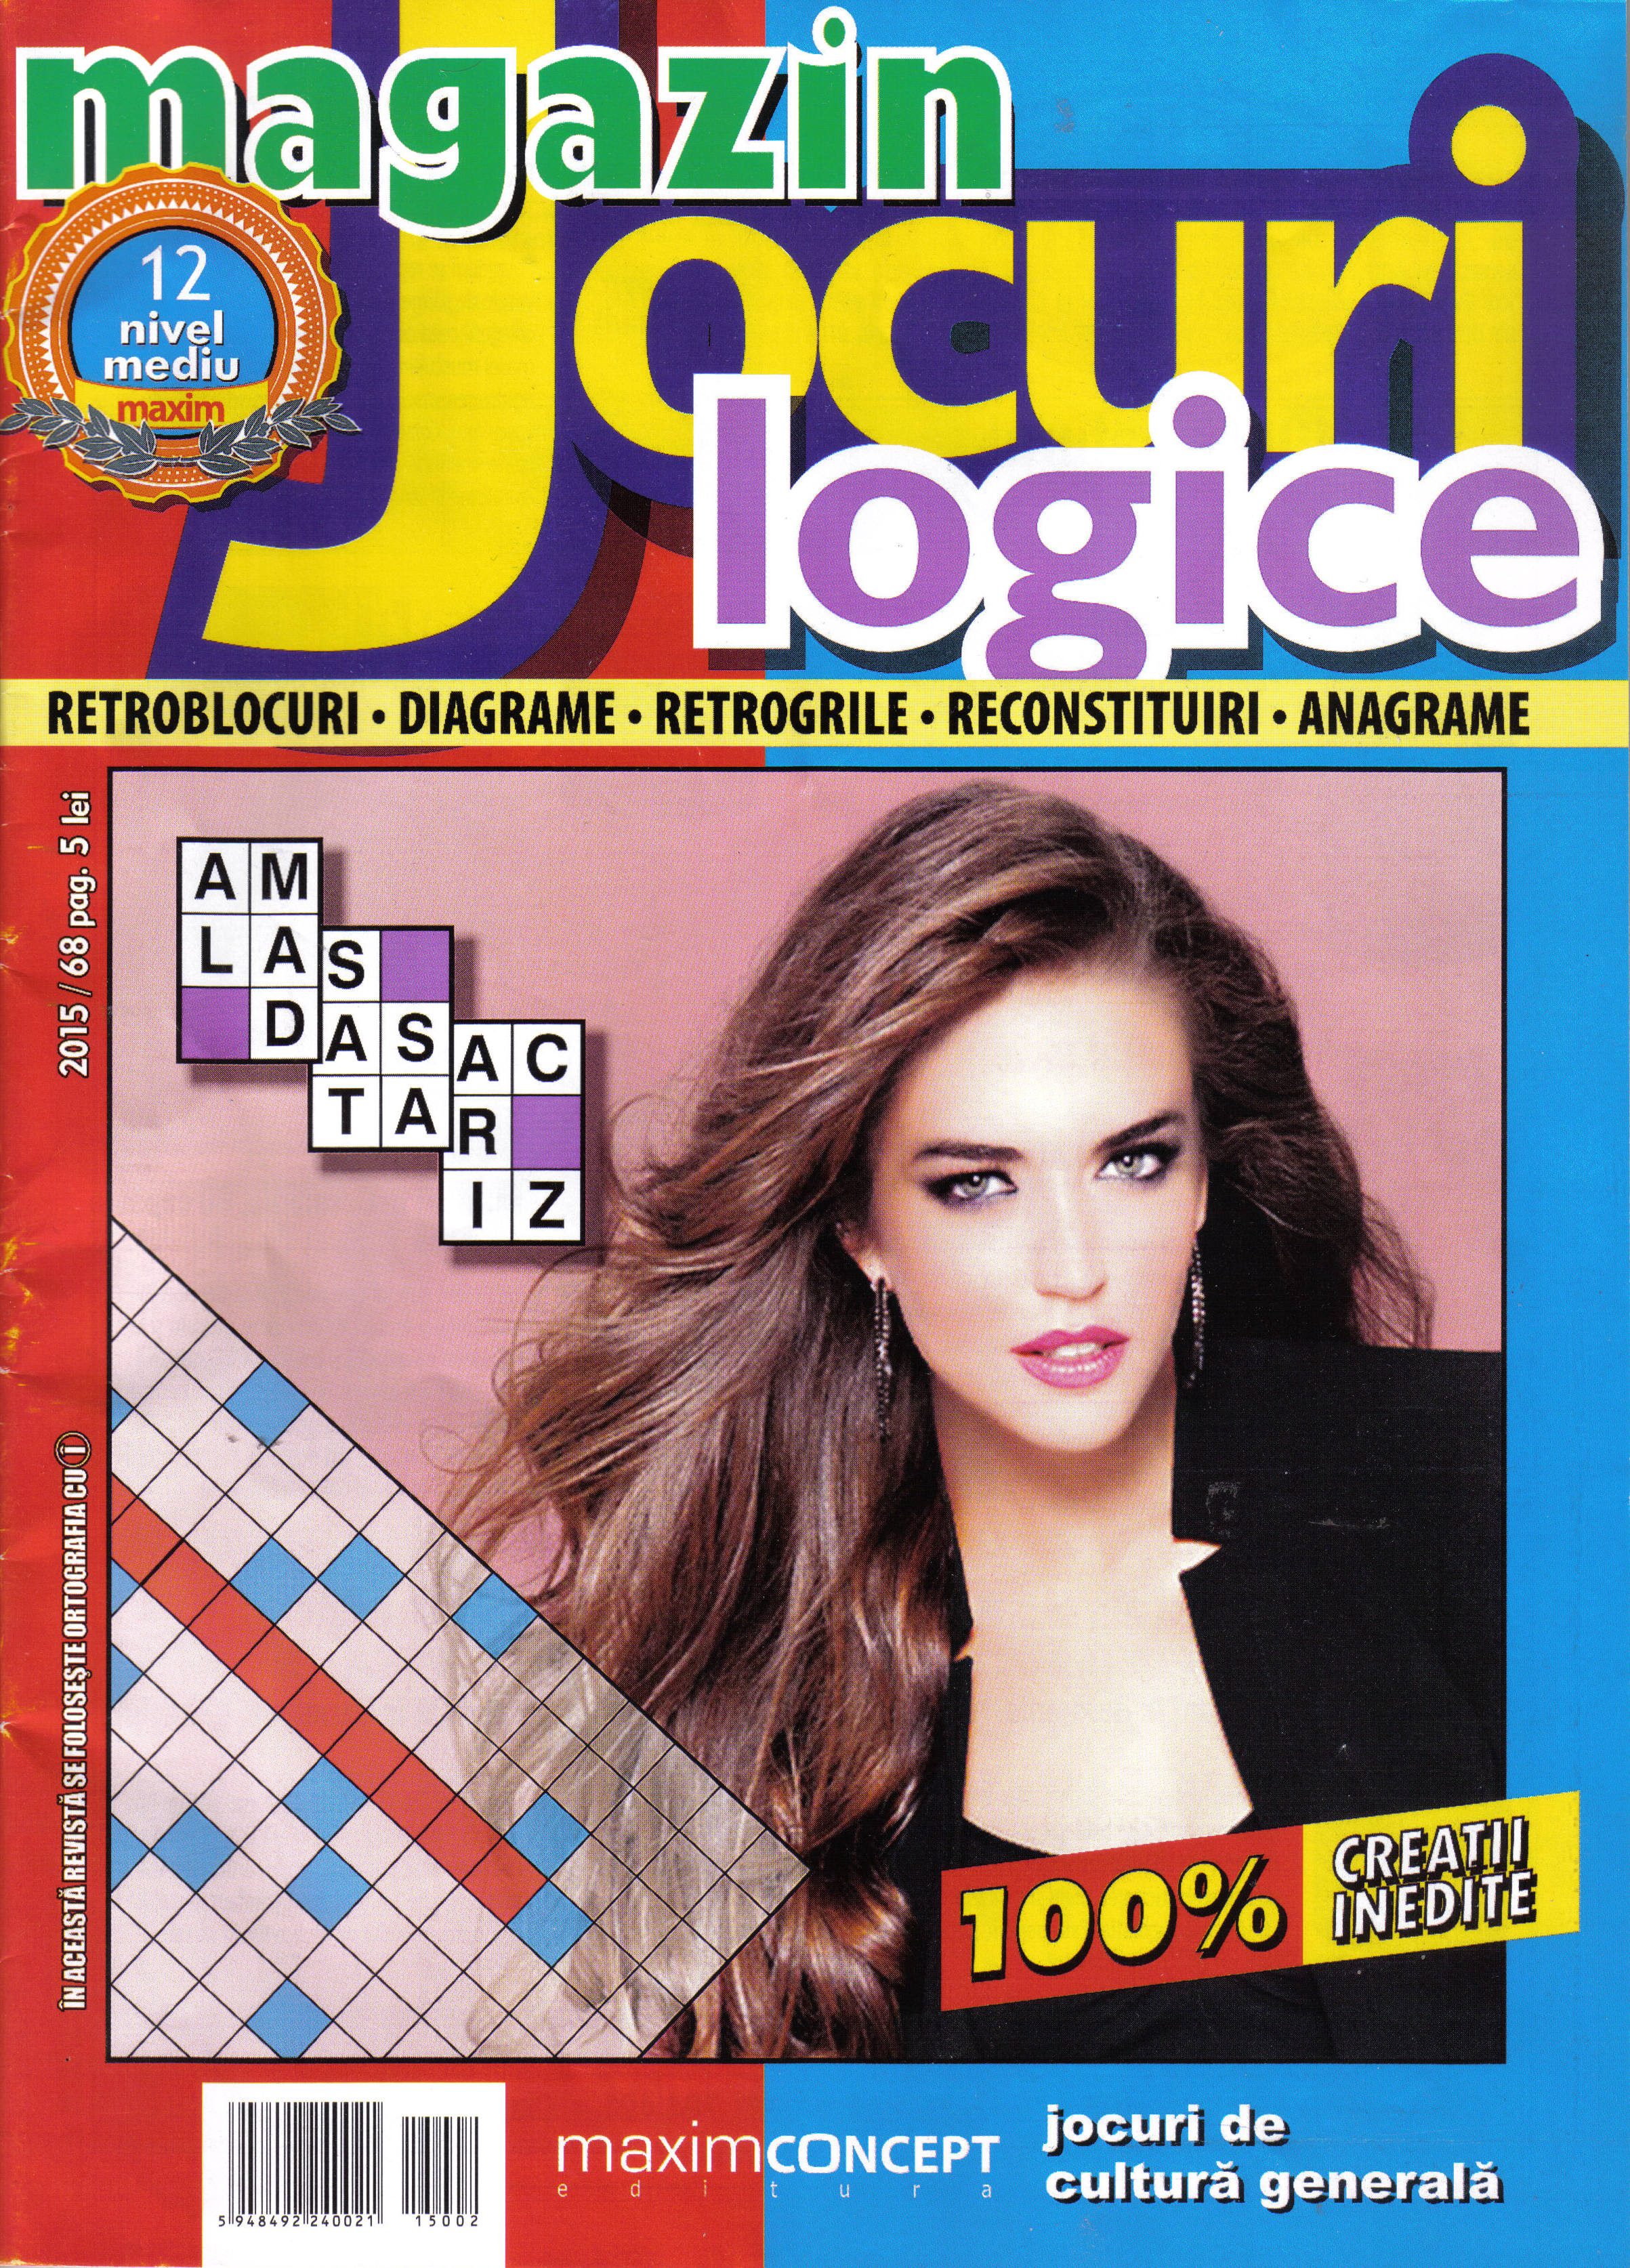 Magazin Jocuri Logice, februarie 2015